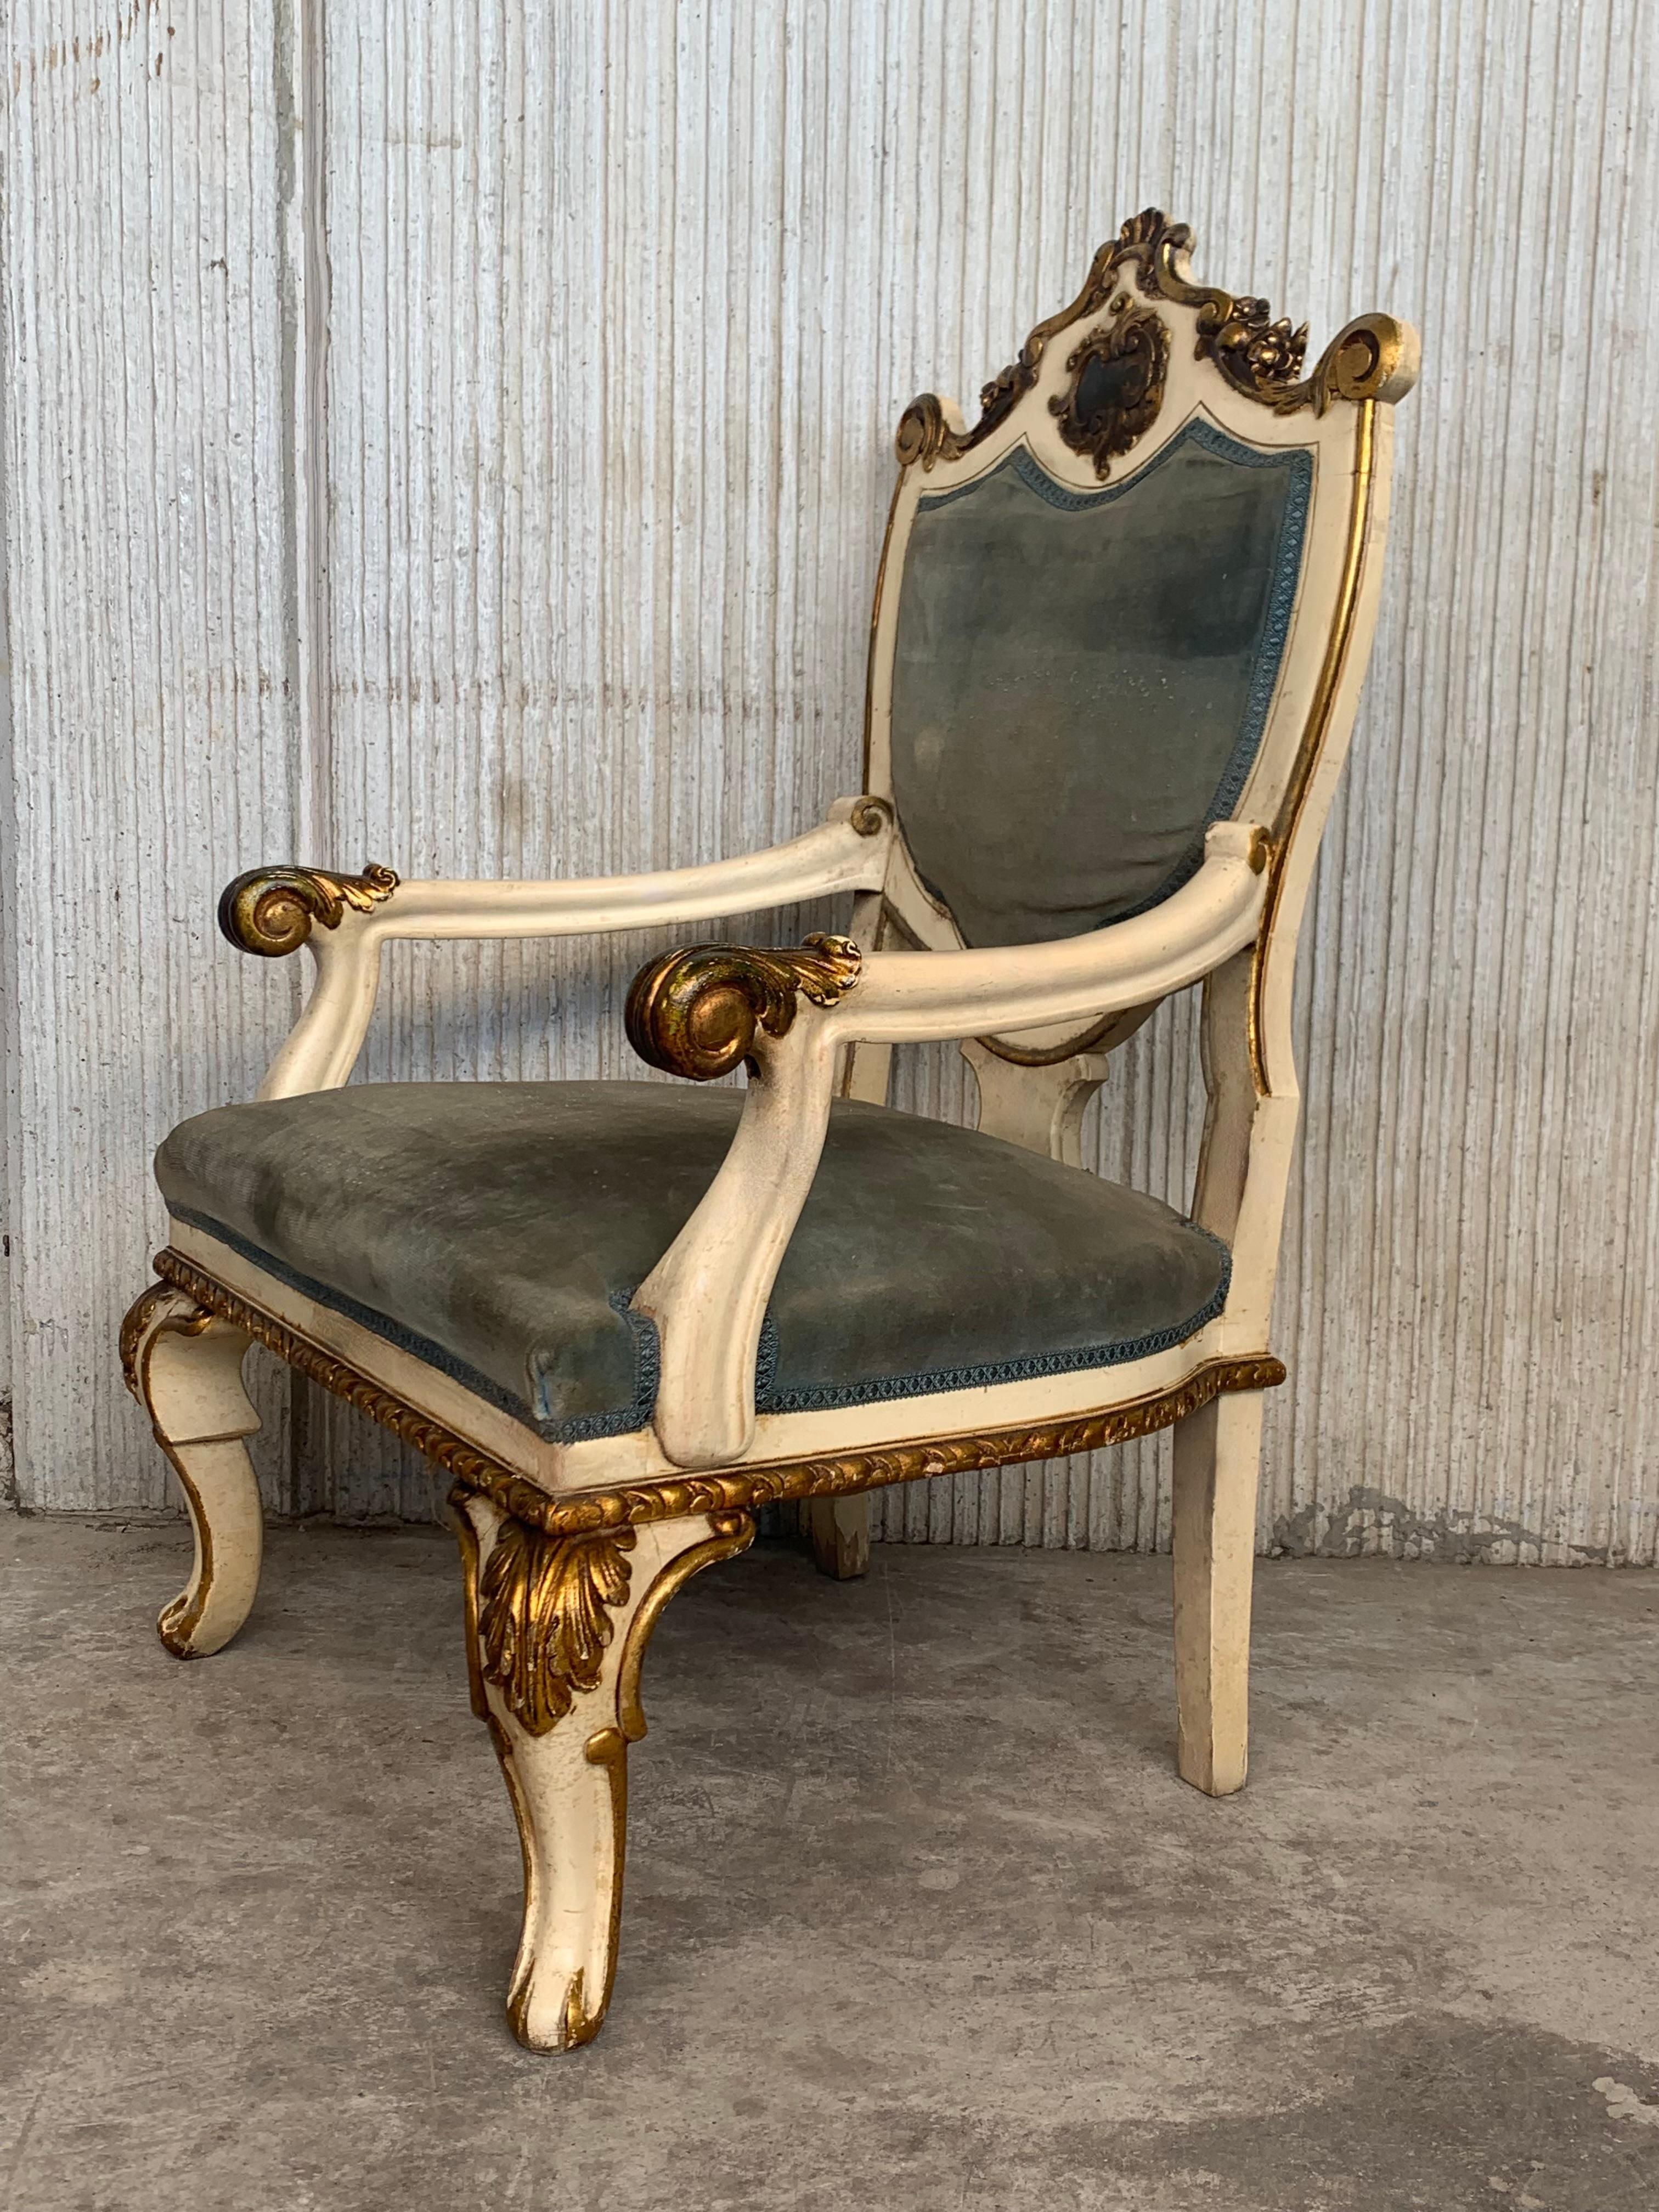 Paar venezianische handbemalte Sessel in weißer antiker Malerei und Vergoldung 
Grüner Samt in Rückenlehne und Sitzen
Schöne Handmalereien auf beiden Rückseiten.